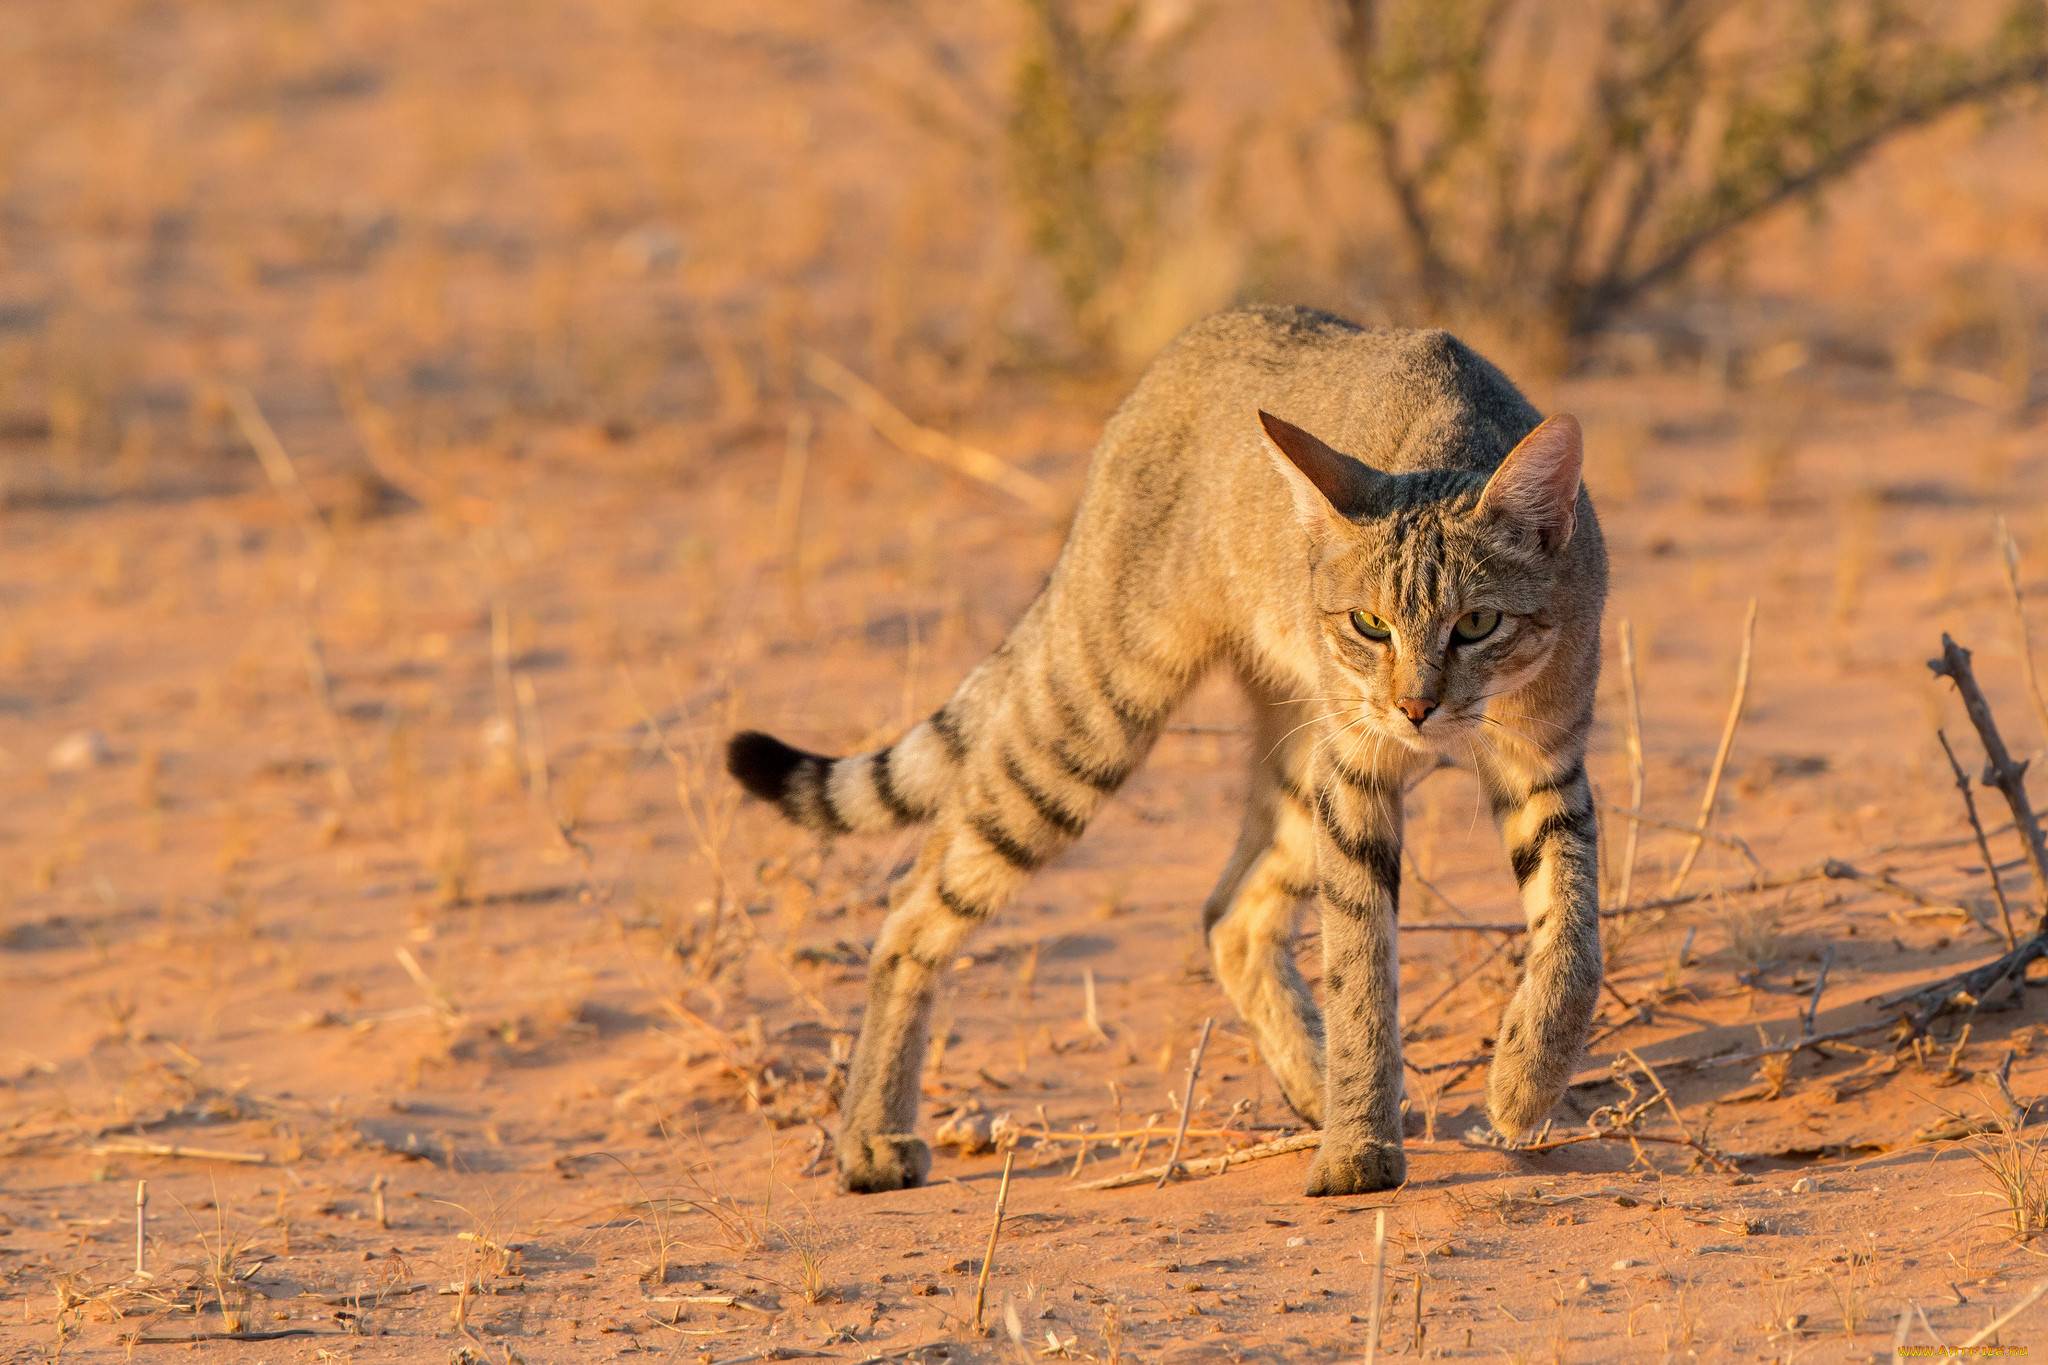 Дикий африканский кот: описание внешности и характера, ареал обитания, размножение и жизнь в неволе